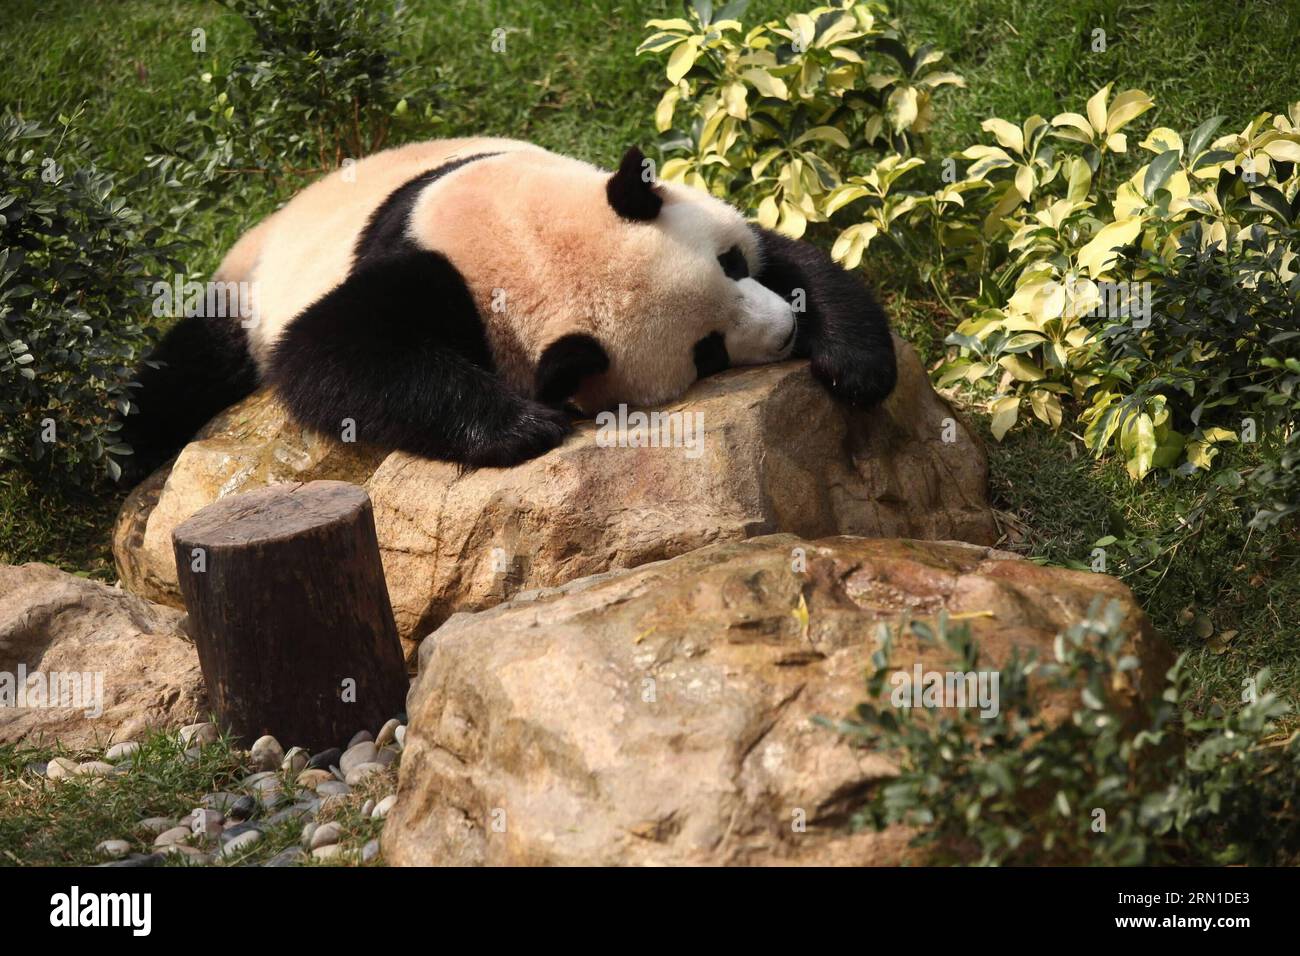 (141219) -- MACAO, 19 décembre 2014 -- dans cette photo de dossier prise le 4 février 2011, la femelle panda Xin Xin prend un repos à Macao, dans le sud de la Chine. Il est décédé d'une insuffisance rénale aiguë et de maladies connexes le 22 juin 2014. Xin Xin, avec Kai Kai, un panda mâle, ont été présentés par le gouvernement central chinois à Macao en cadeau pour le 10e anniversaire de la région administrative spéciale de Macao (RAS) en 2009. Le gouvernement central chinois va conférer une autre paire de pandas géants à Macao, a déclaré vendredi le président Xi Jinping ici, lors de sa rencontre avec Chui Sai On, directeur général de la RAS de Macao. (lmm) Banque D'Images